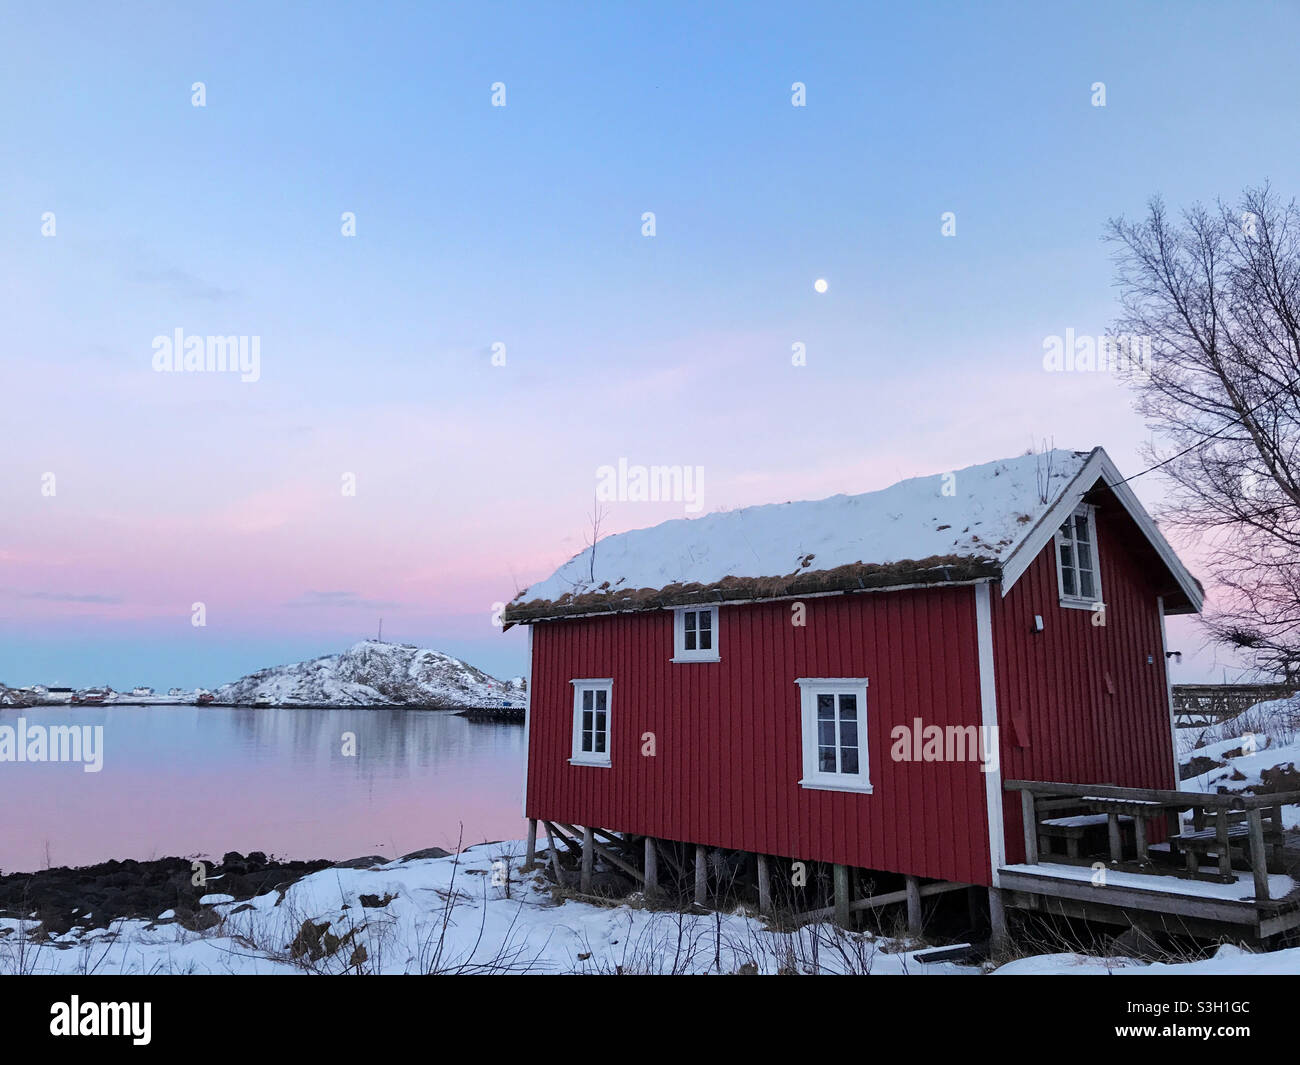 Bel villaggio di pescatori di Reine in inverno, Isole Lofoten, Norvegia. Tramonto colorato sullo splendido villaggio di pescatori di Reine, circondato da fiordo innevato. Foto Stock